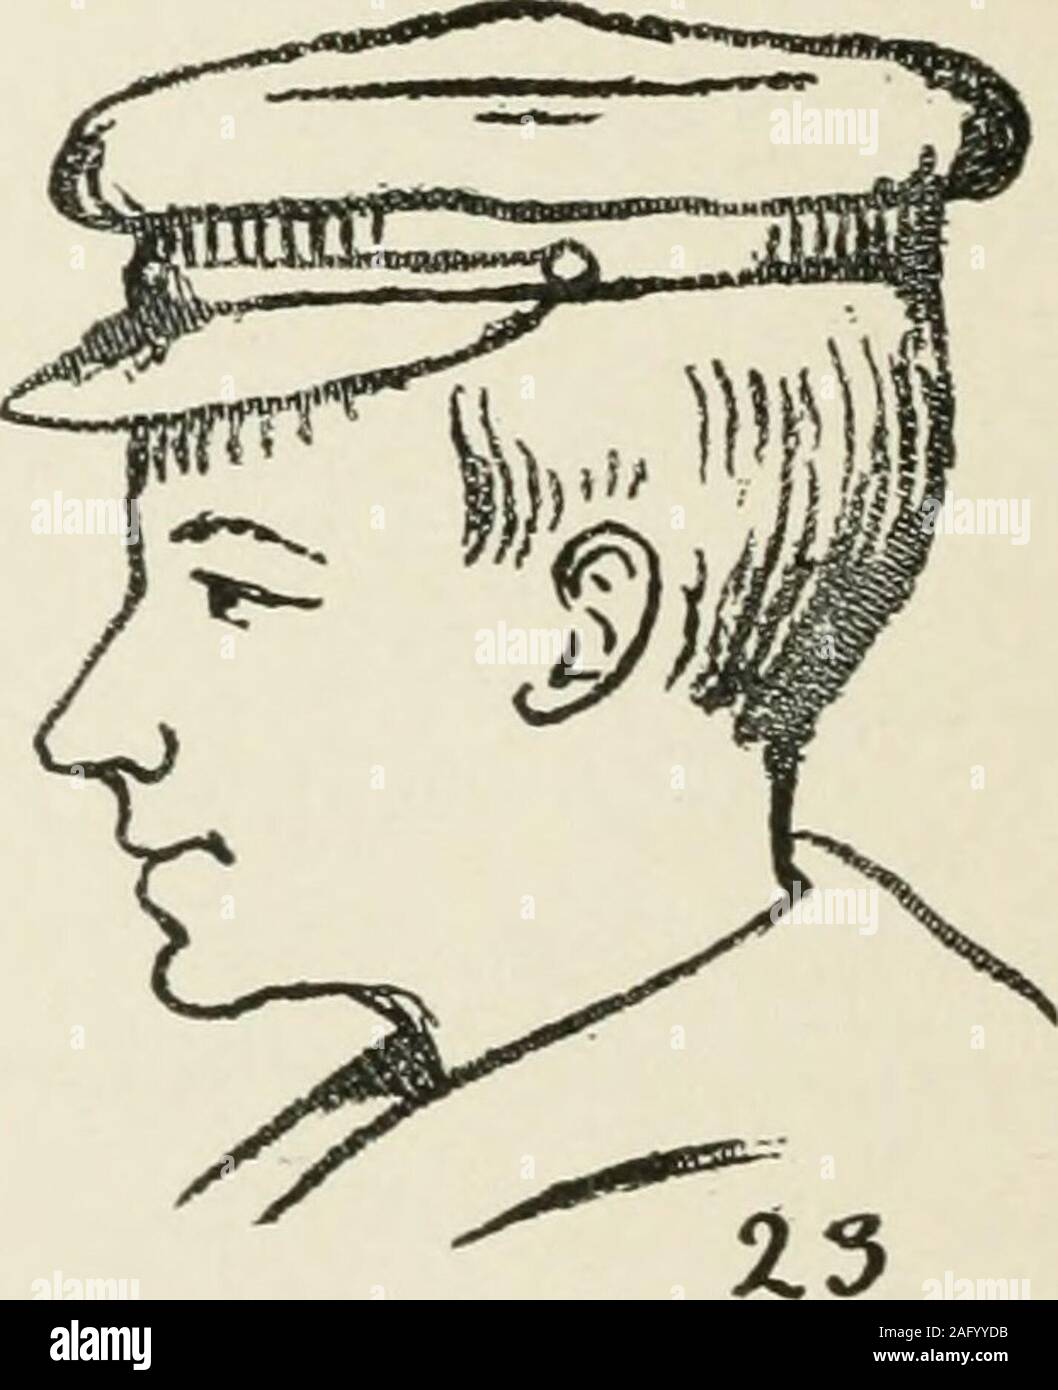 Augsburg il disegno del libro, 2. Un cappello o berretto posto sulla testa  di un allievo è non solo eccellente ma molto interessante modello.  Collocare un tappo simile a Fig. 22